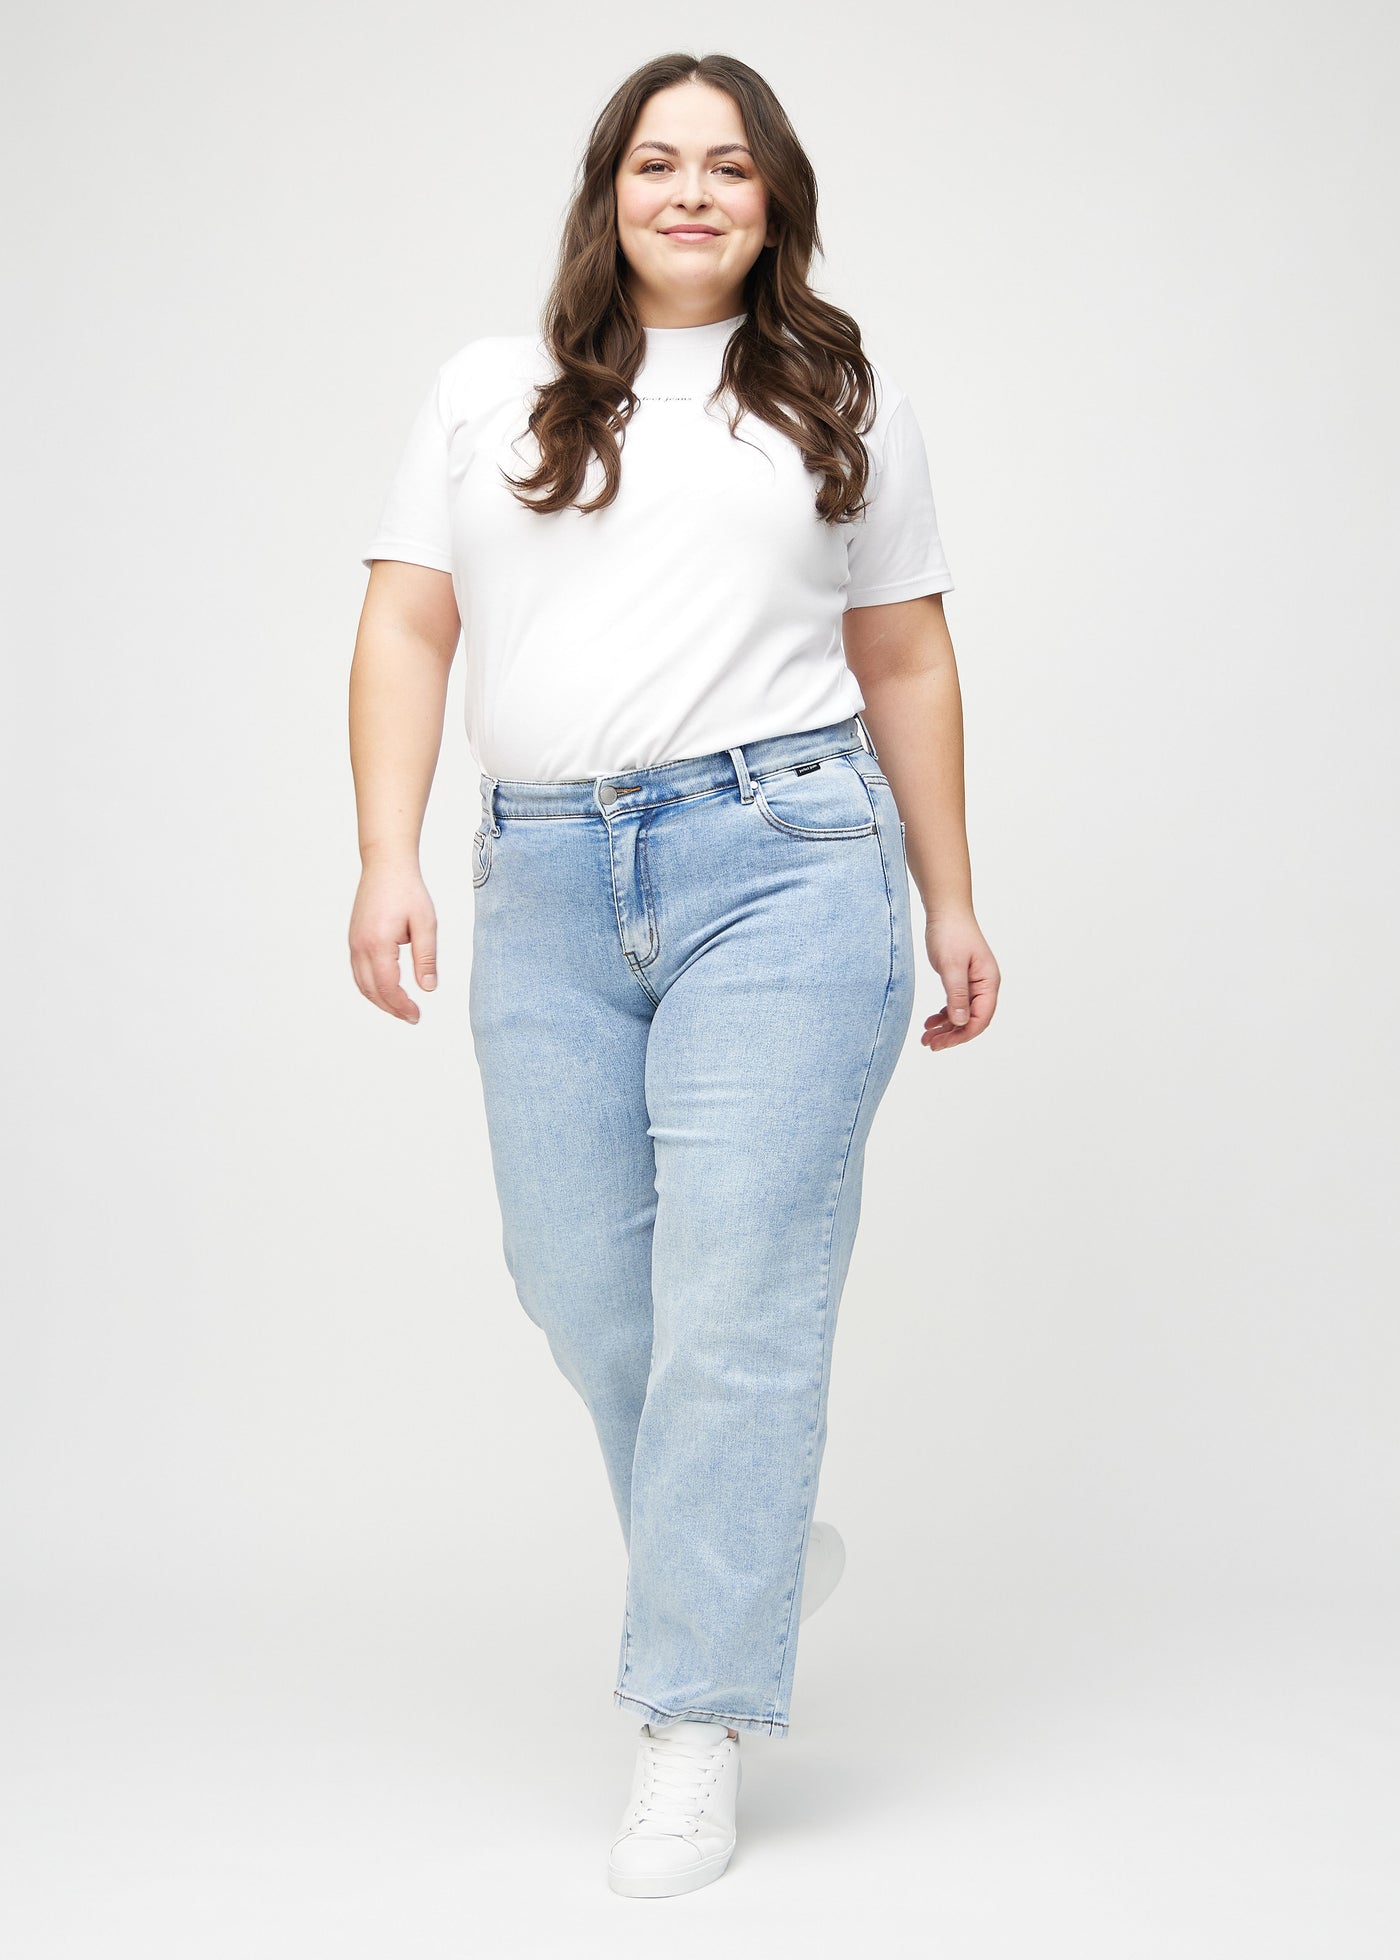 Fuldt billede af en plus-size model i lys denim loose jeans.